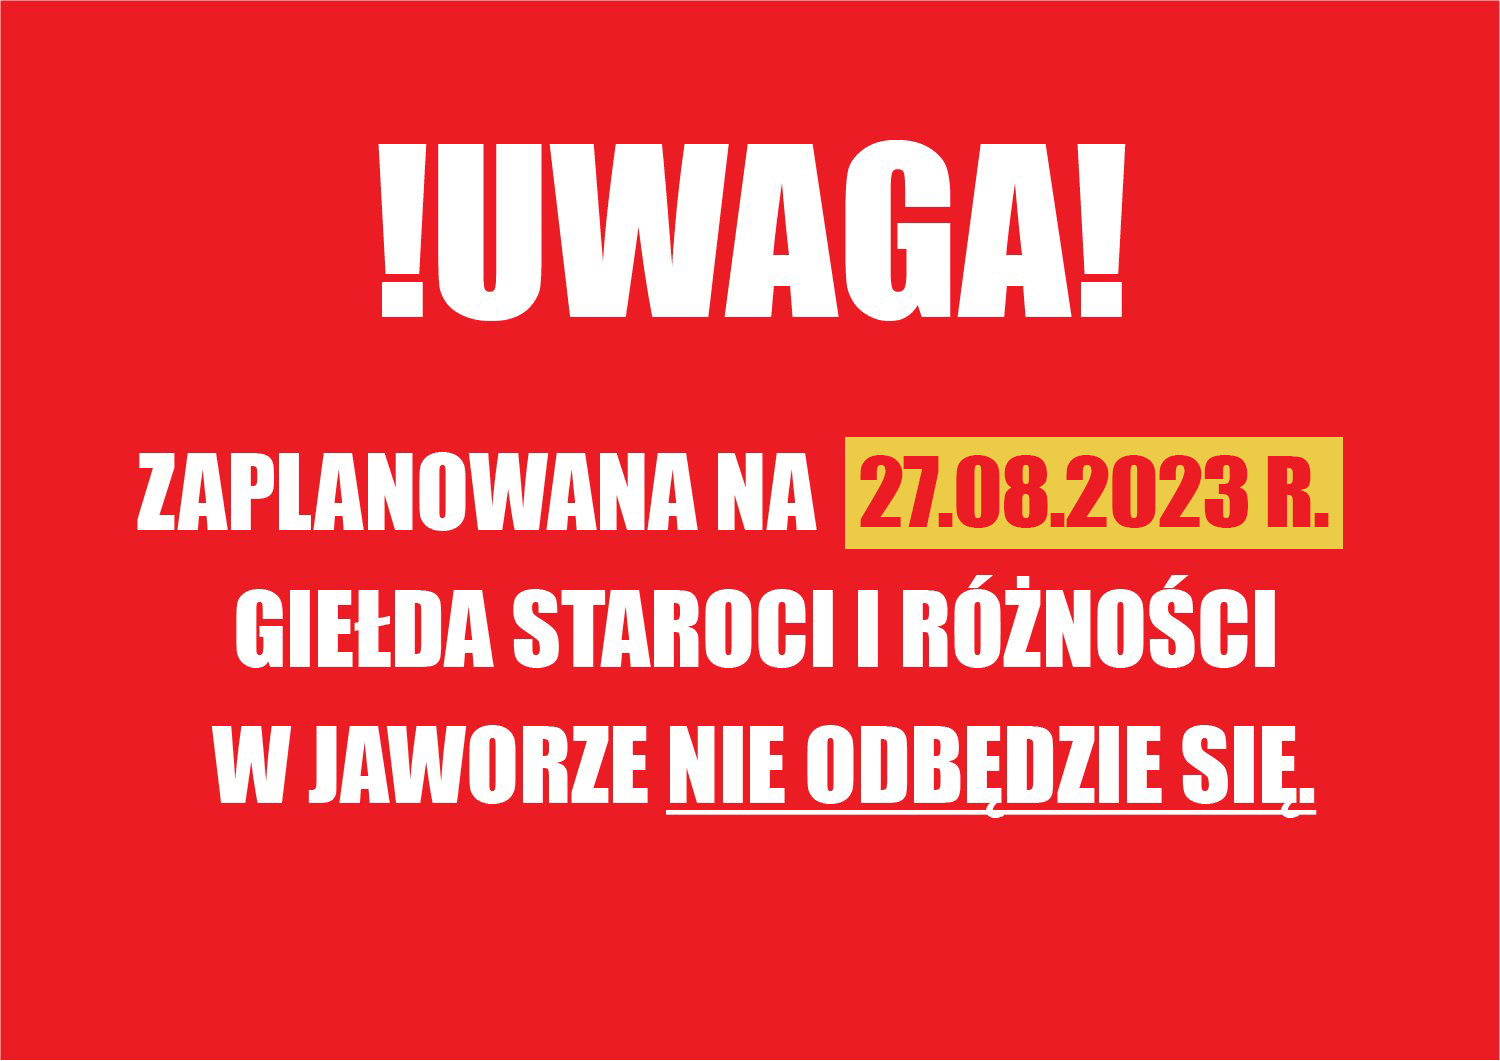 [KOMUNIKAT]: Zaplanowana na 27.08.2023 r. Giełda Staroci i Różności w Jaworze nie odbędzie się.